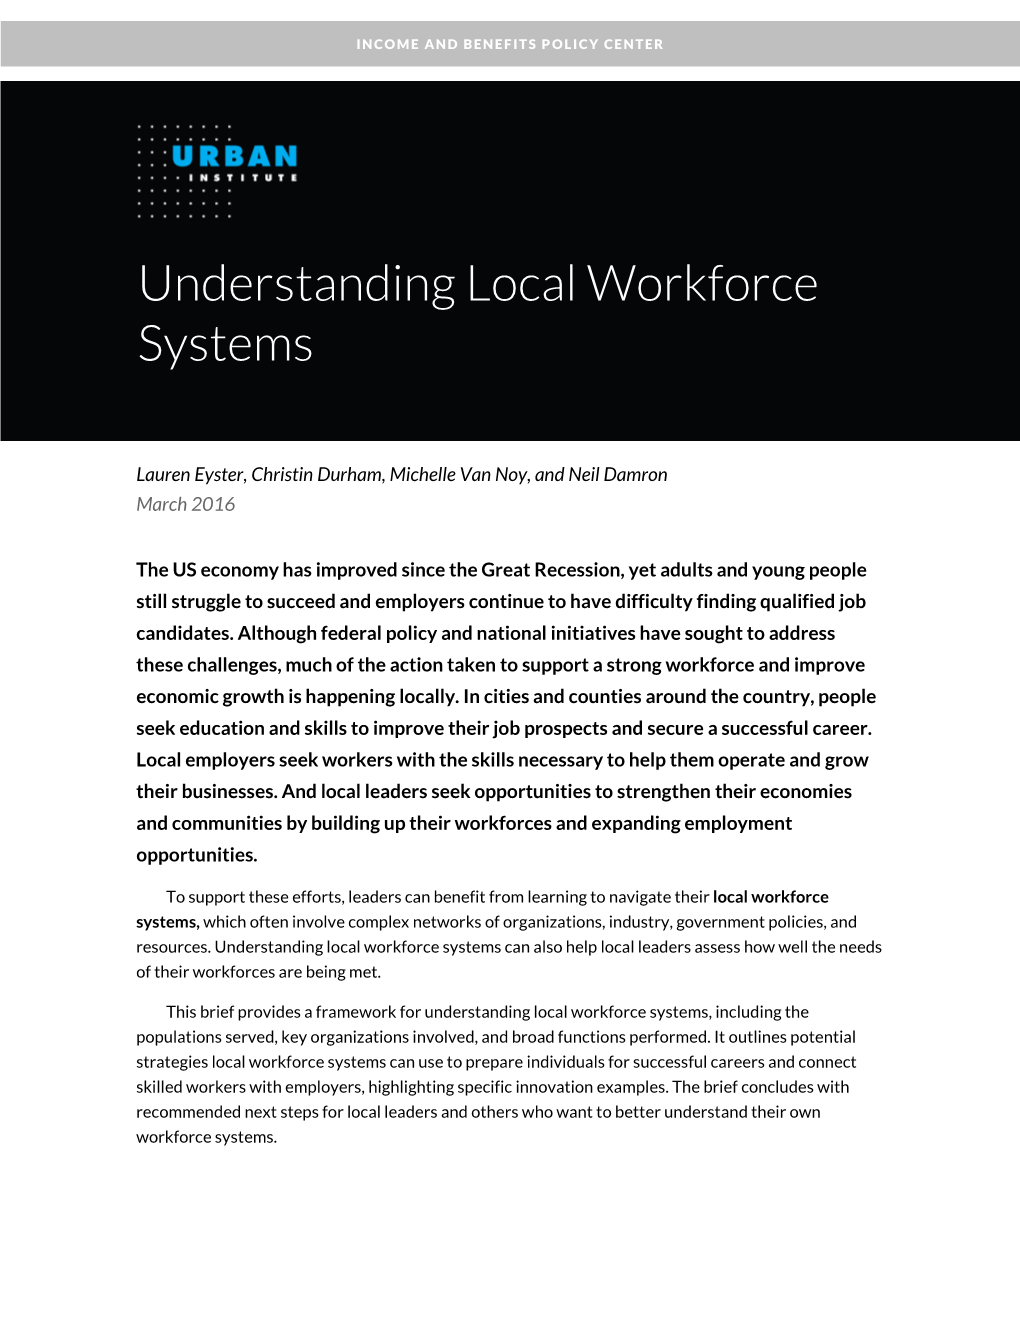 Understanding Local Workforce Systems